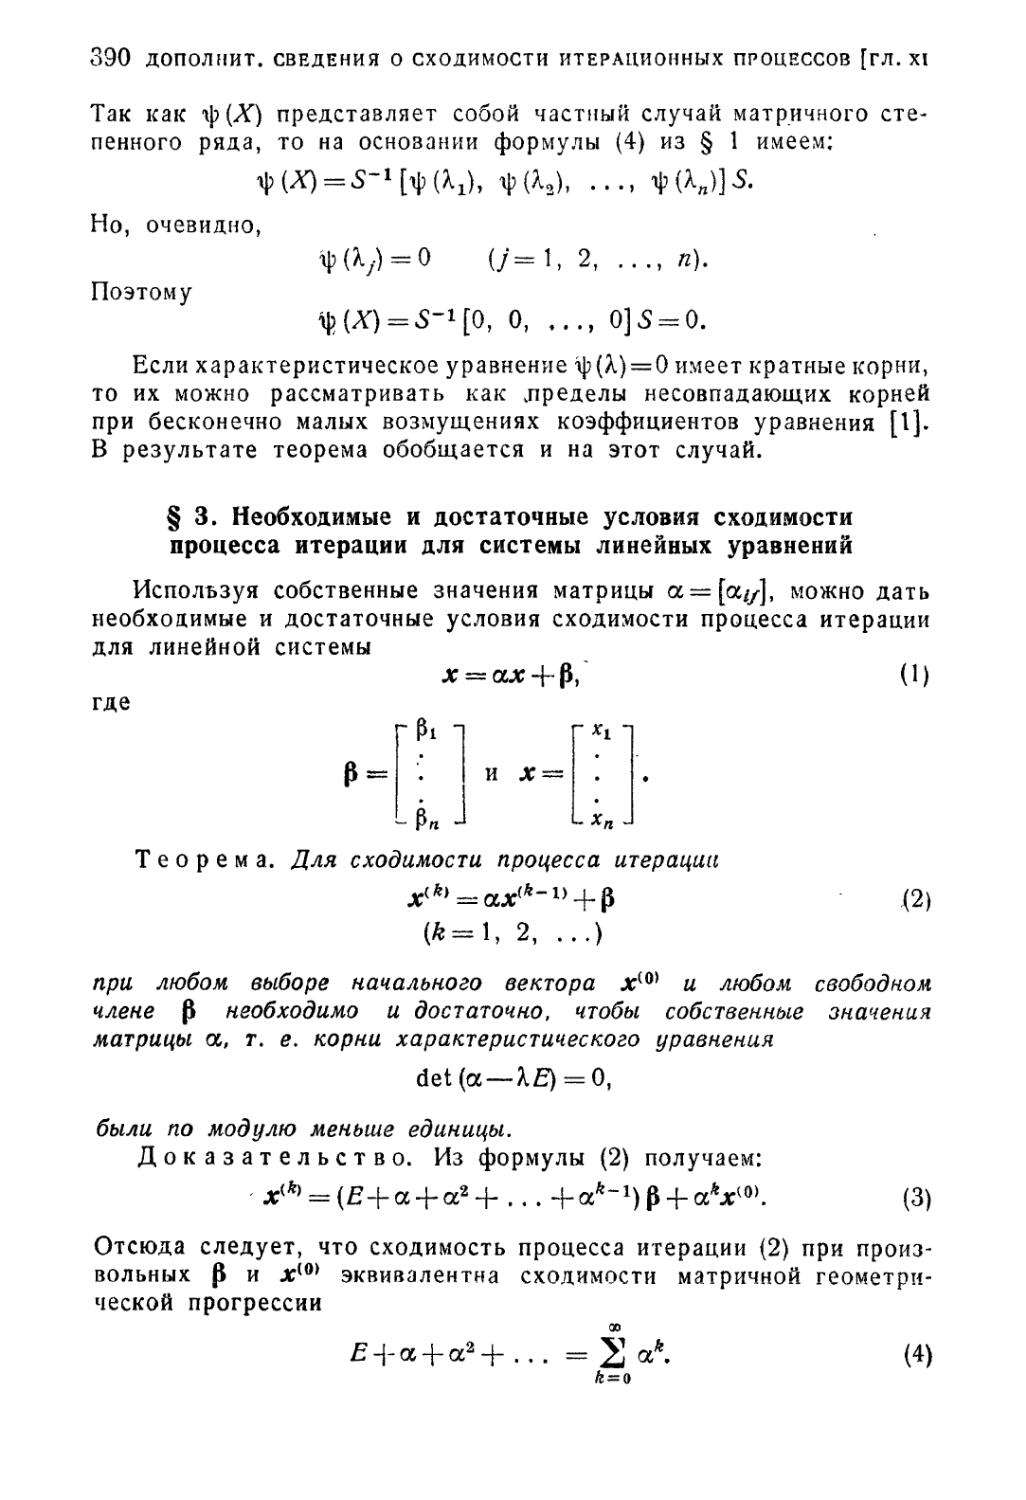 § 3. Необходимые и достаточные условия сходимости процесса итерации для системы линейных уравнений